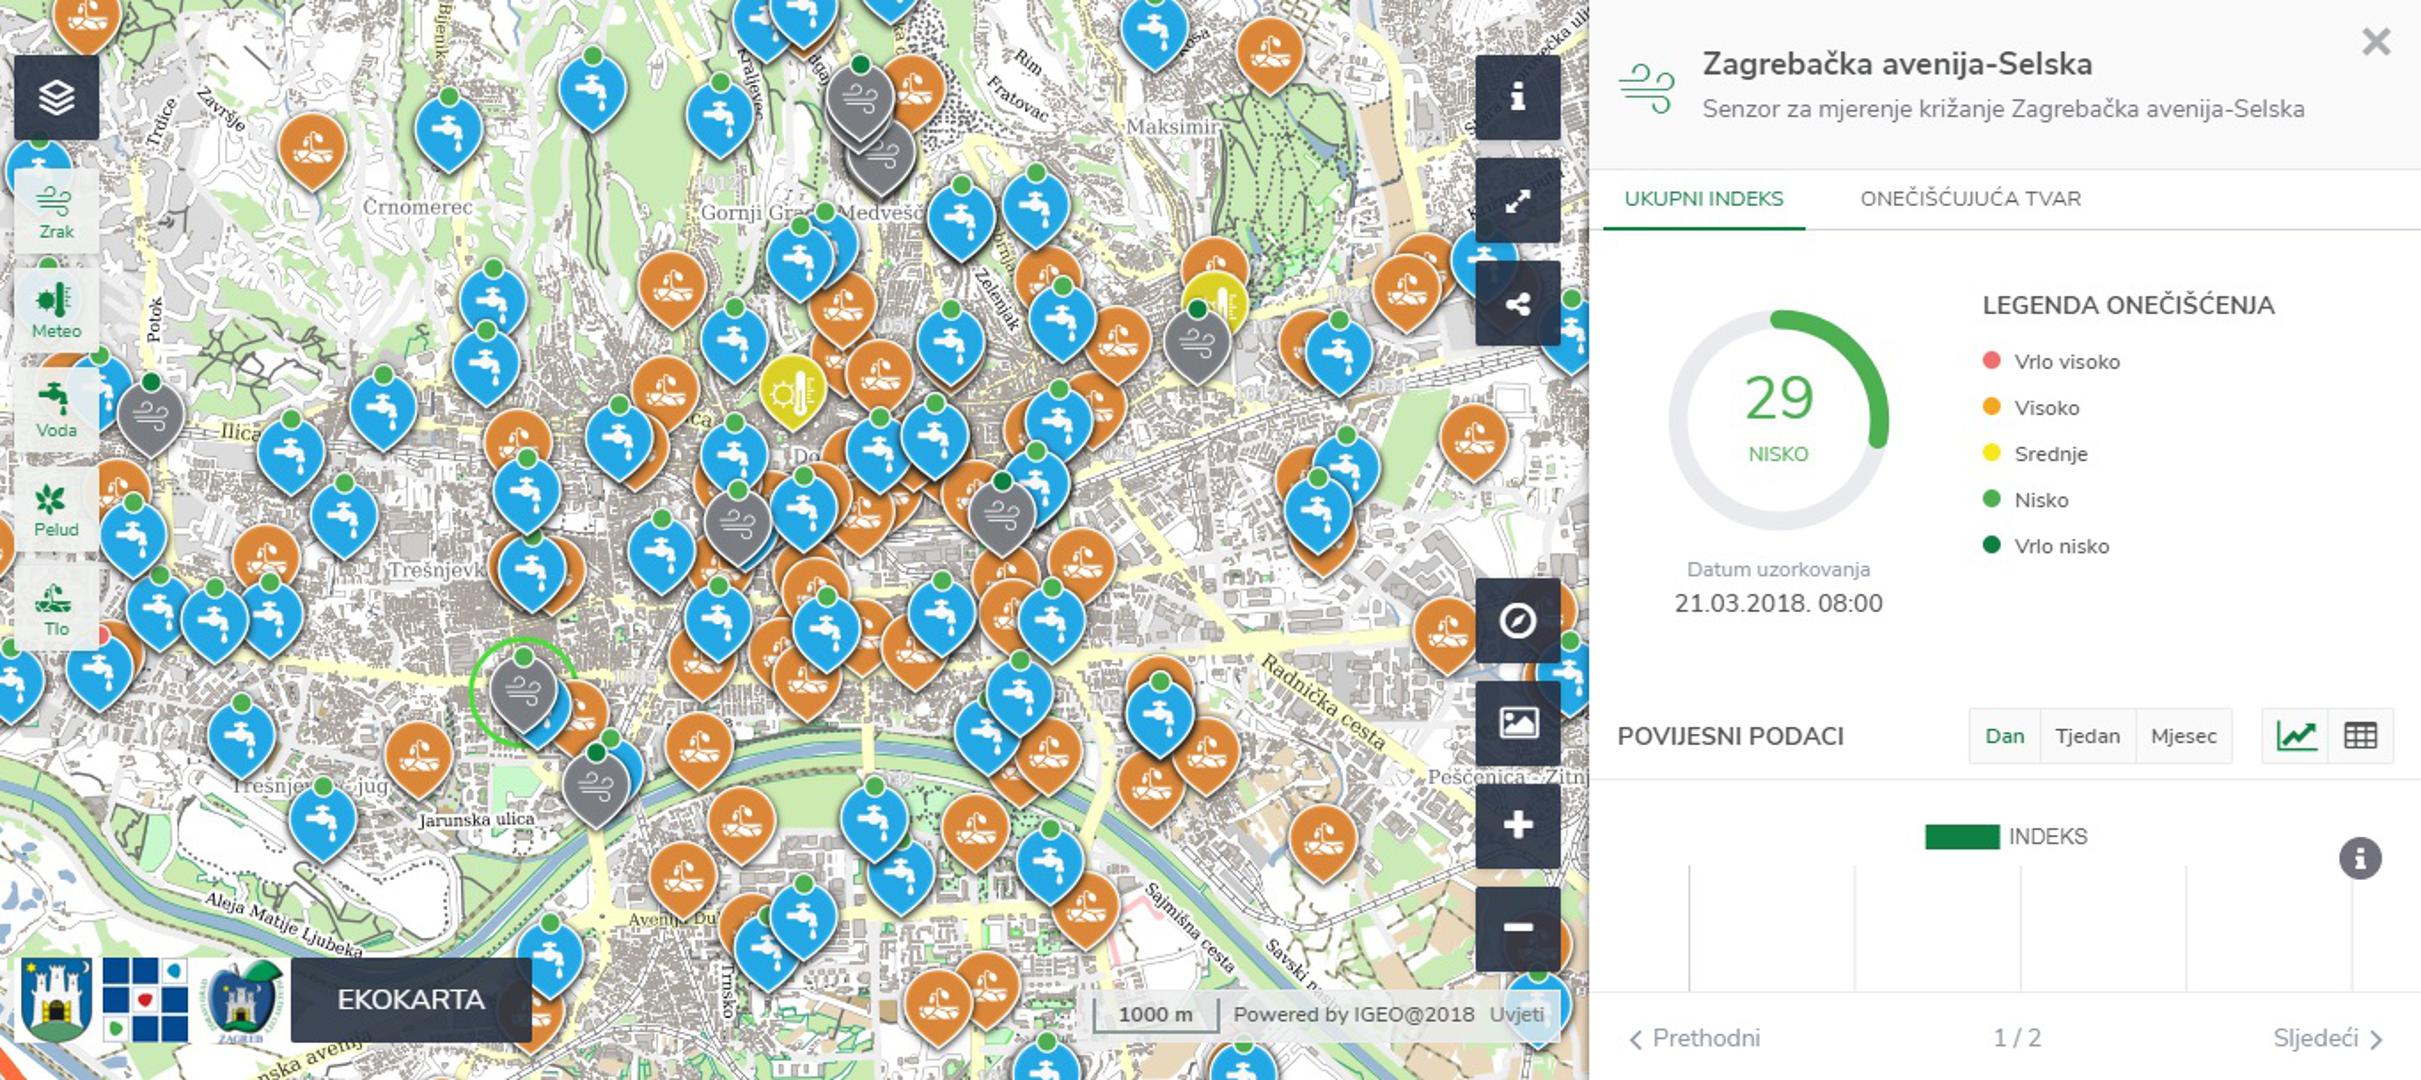 Eko Zagreb - Pomoću ove aplikacije Zagrepčani mogu provjeriti kakvoću zraka, vode i tla. Podaci su istaknuti na karti koja, klikom na određeno mjesto, nudi uvid u čimbenike okoliša i njihov utjecaj na zdravlje.